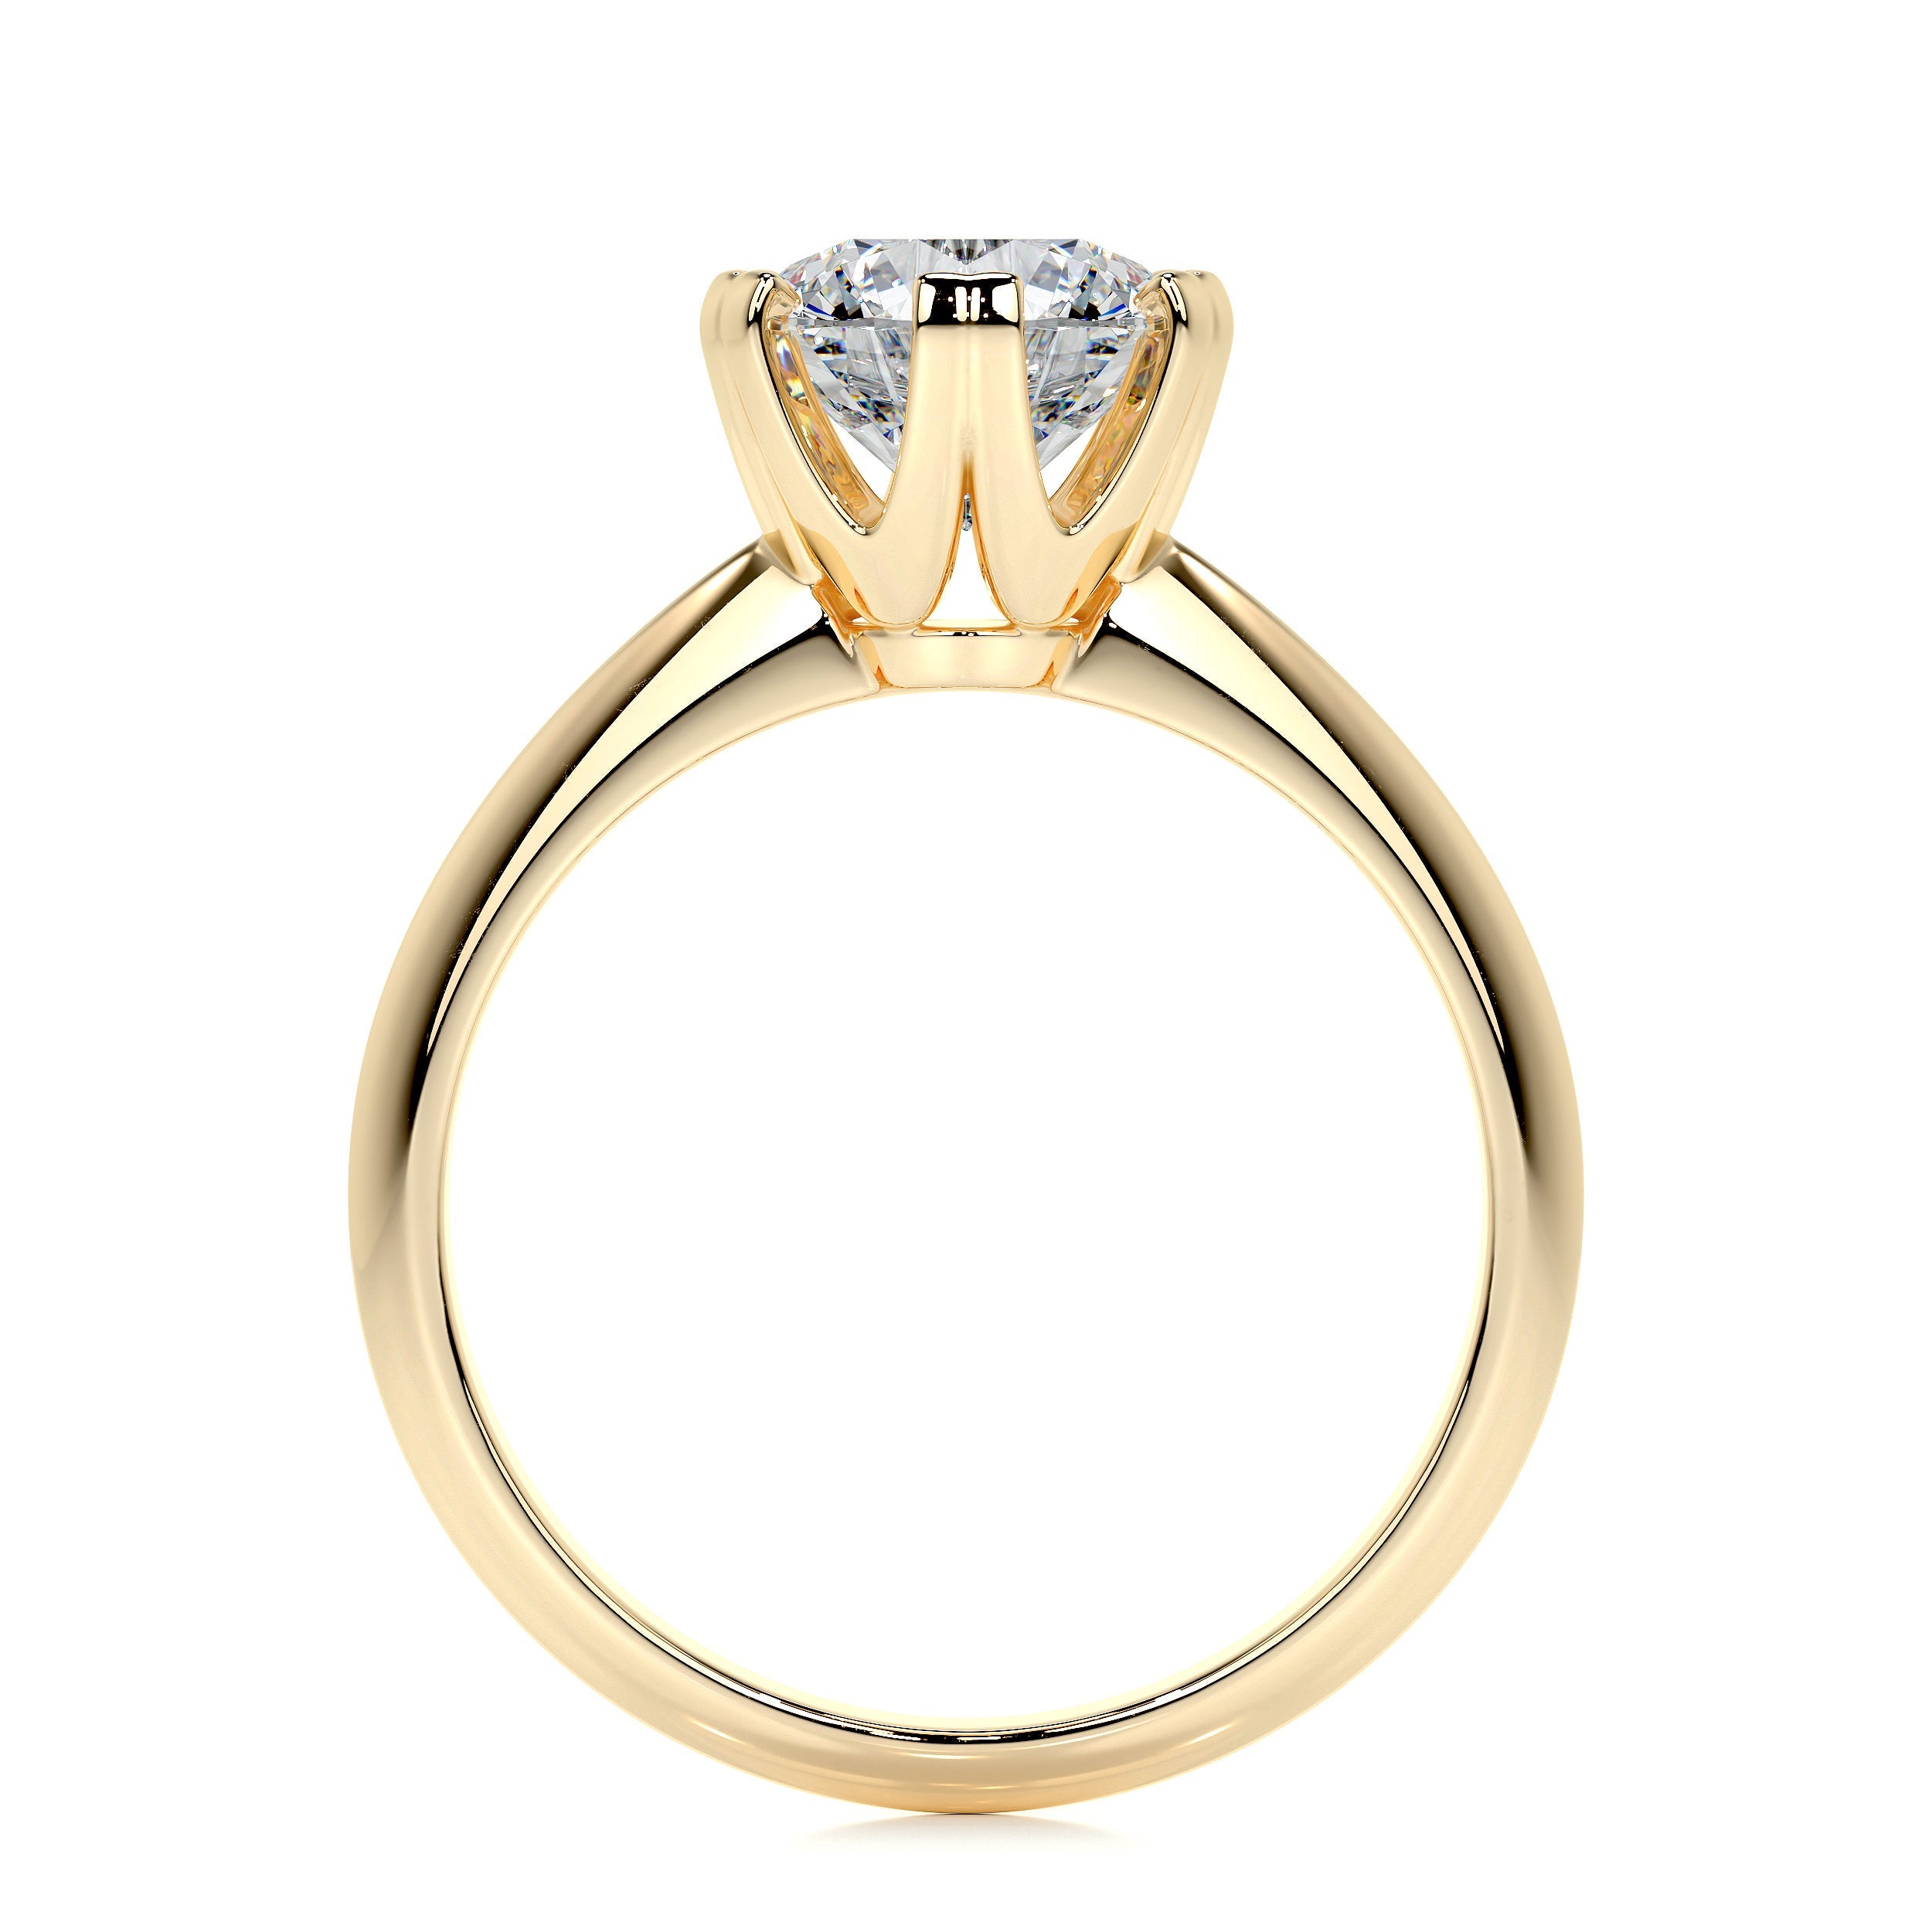 Alexis Lab Grown Diamond Ring   (1.5 Carat) -18K Yellow Gold